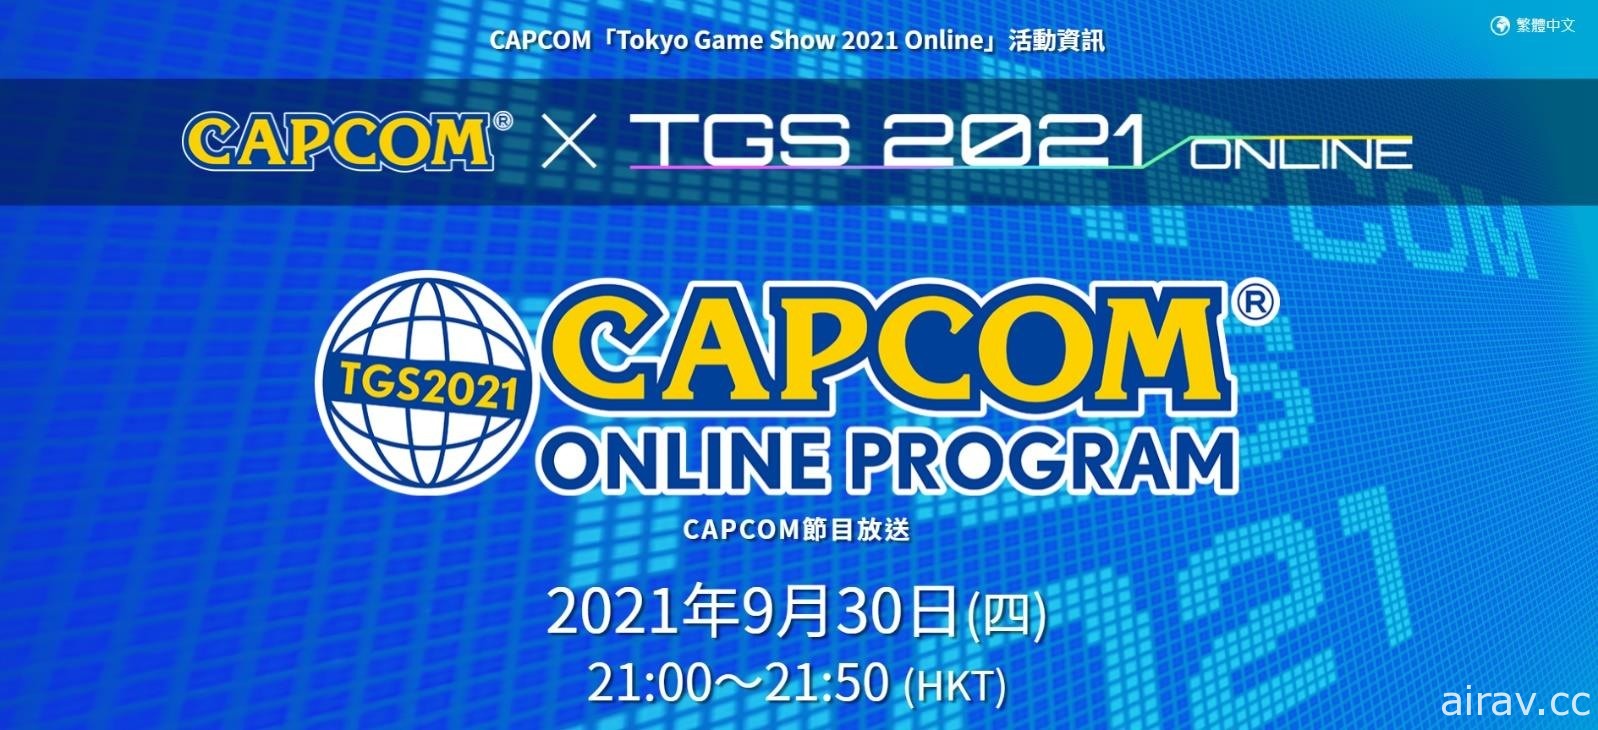 【TGS 21】CAPCOM 将于 9 月 30 日播出线上节目 同步提供中文字幕